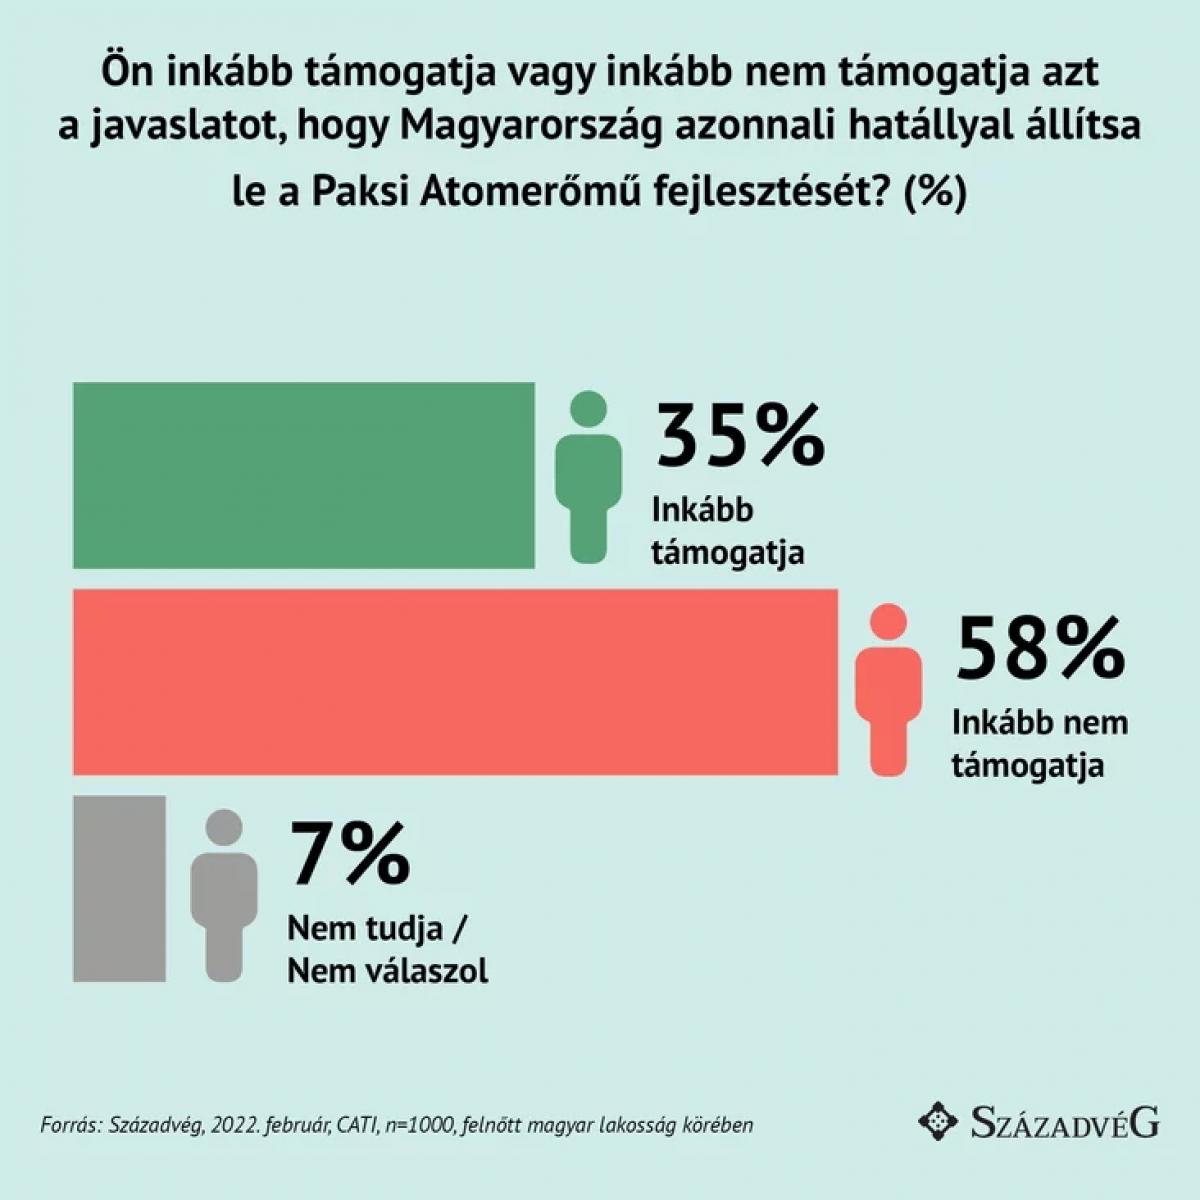 A magyarok 58%-a nem támogatja Paks II. leállítását